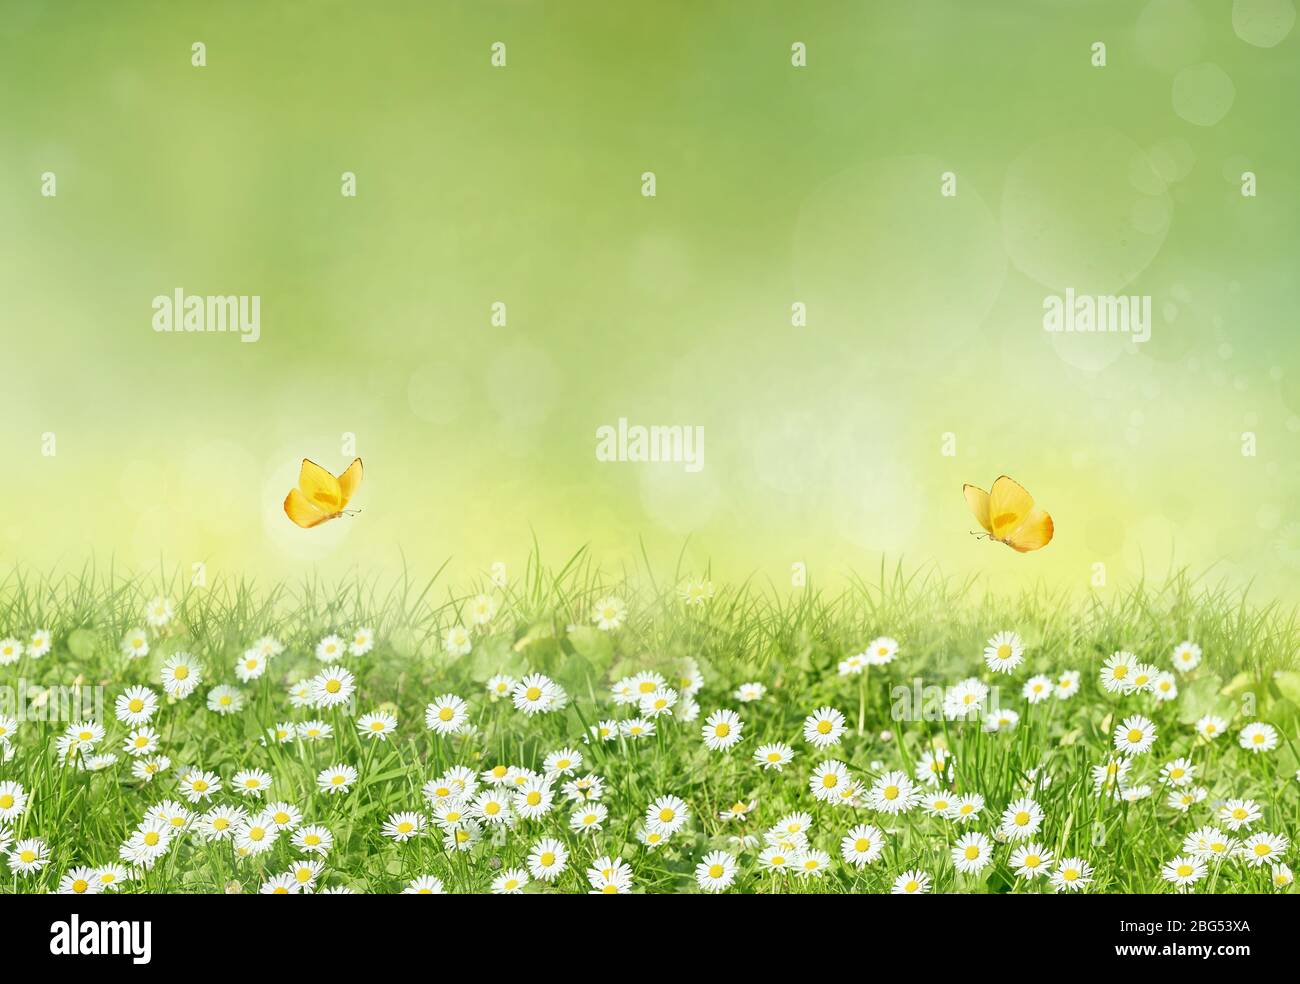 Schöne Wildblumen Kamille mit gelben Schmetterlingen. Frühling Sommer Hintergrund. Querformat, Kopierbereich, warme grüne Farben. Stockfoto